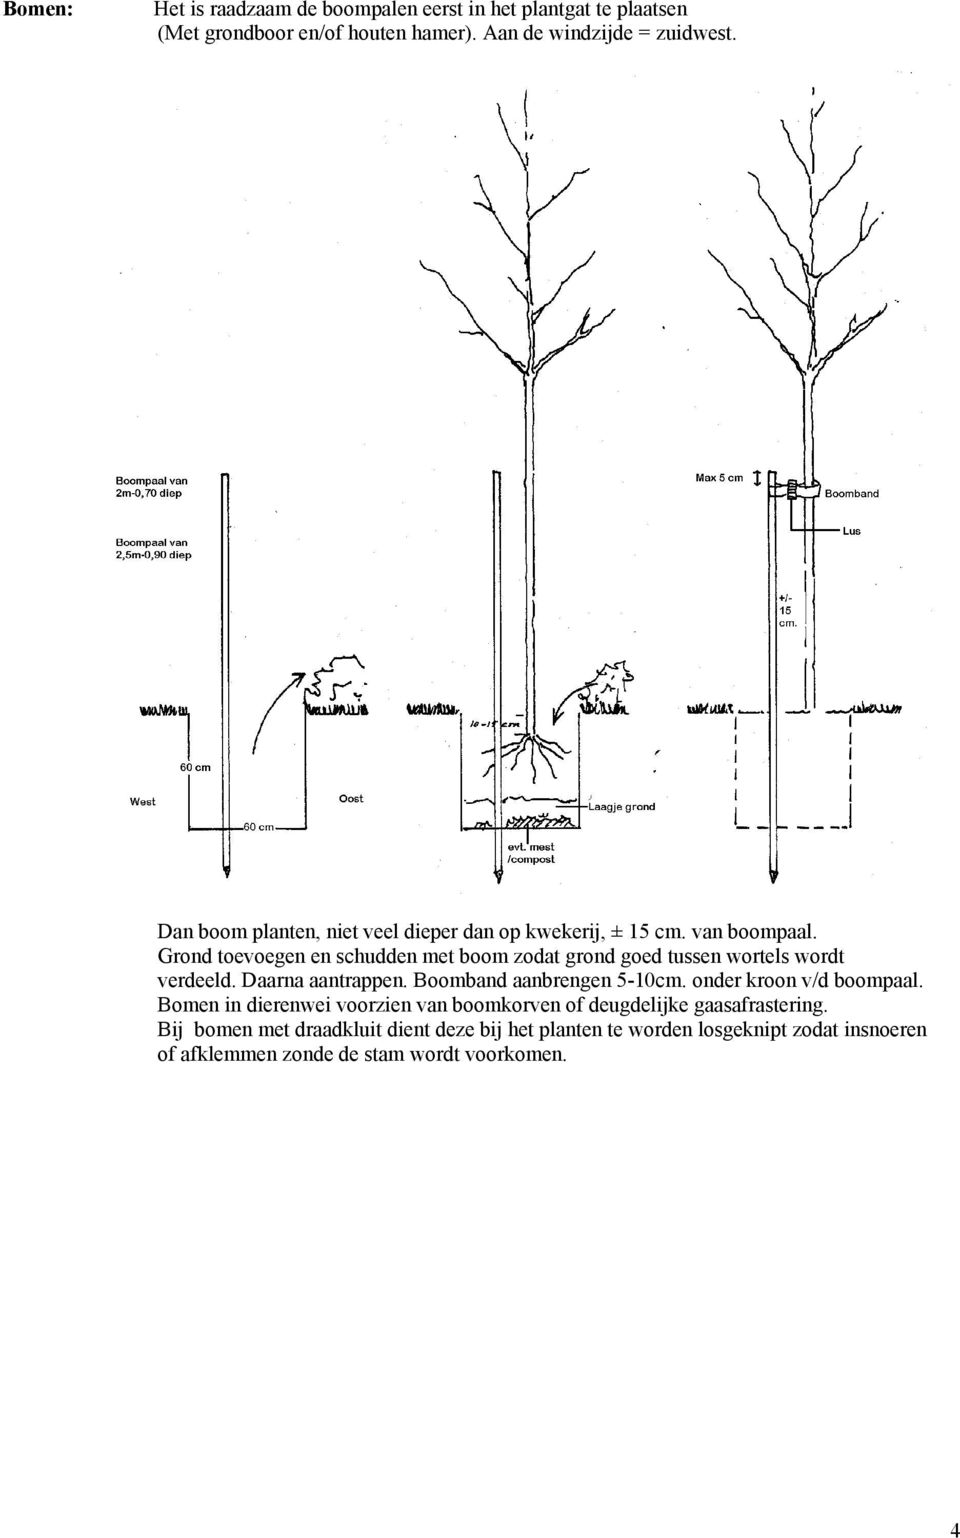 Grond toevoegen en schudden met boom zodat grond goed tussen wortels wordt verdeeld. Daarna aantrappen. Boomband aanbrengen 5-10cm.